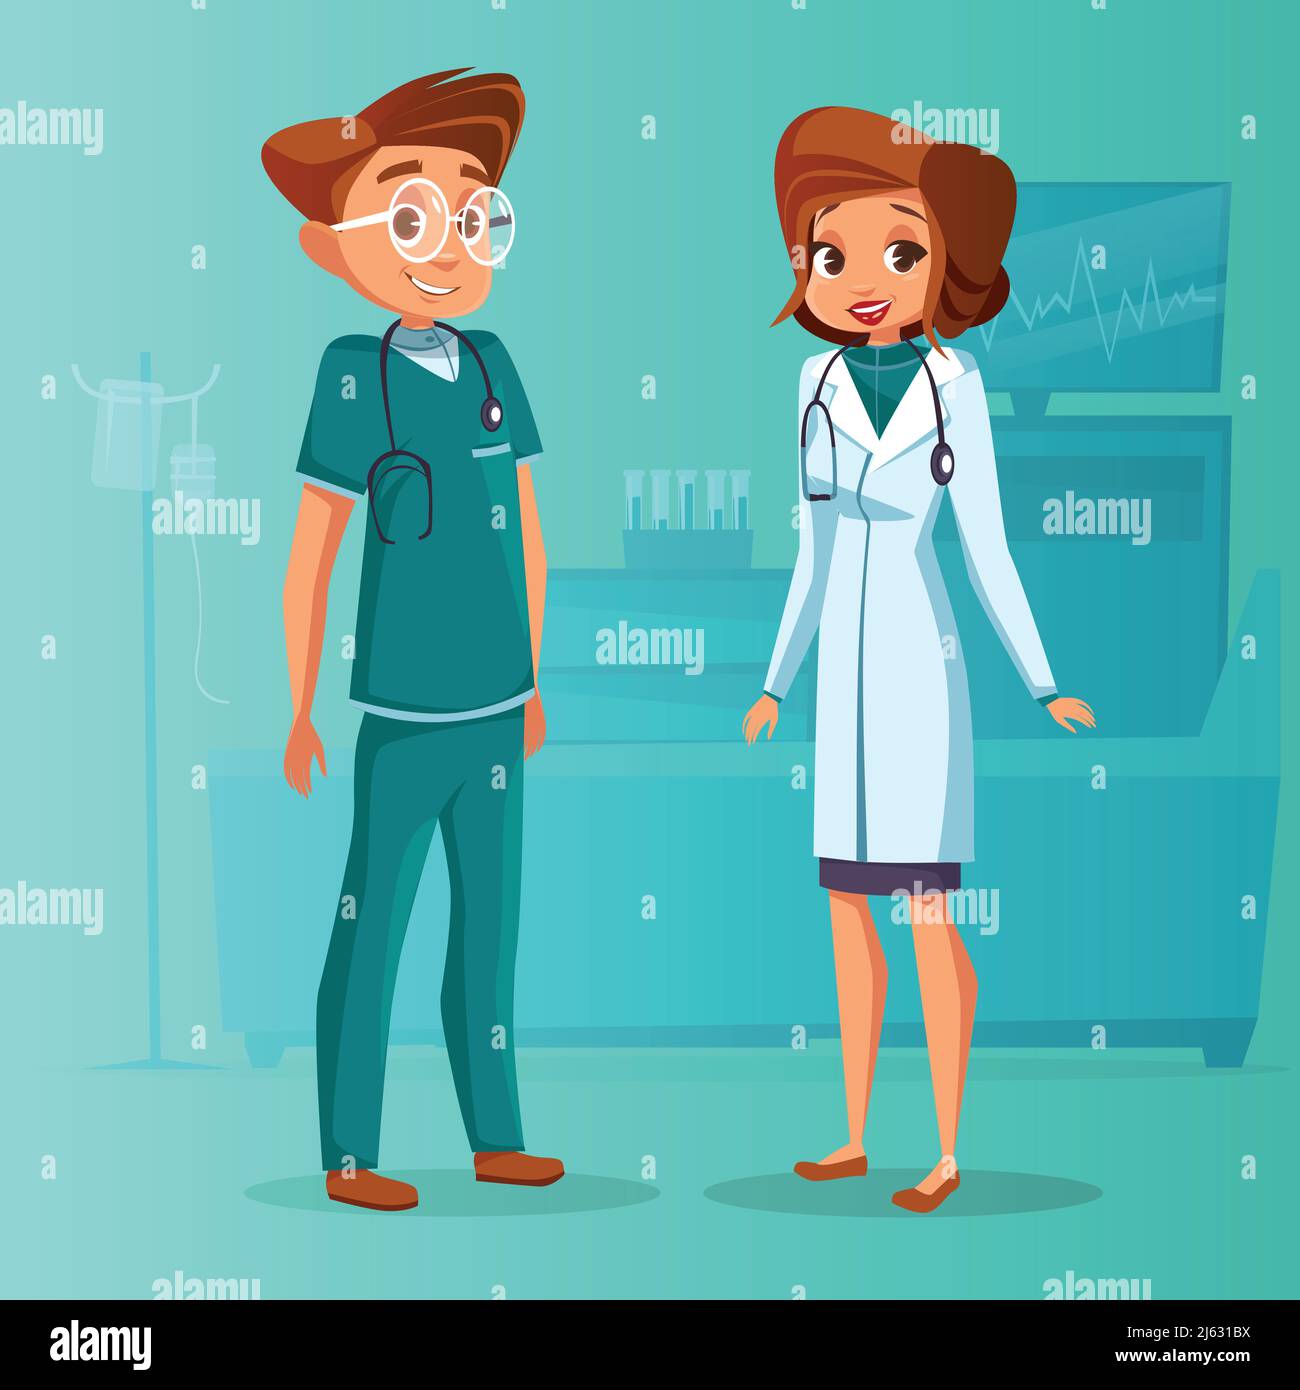 Vektor Cartoon männlich weiblich Arzt, Krankenschwester Set. Chirurg Mann in grüner Uniform mit Stethoskop, Ärztin Fachfrau in weiß. Illustration healthc Stock Vektor